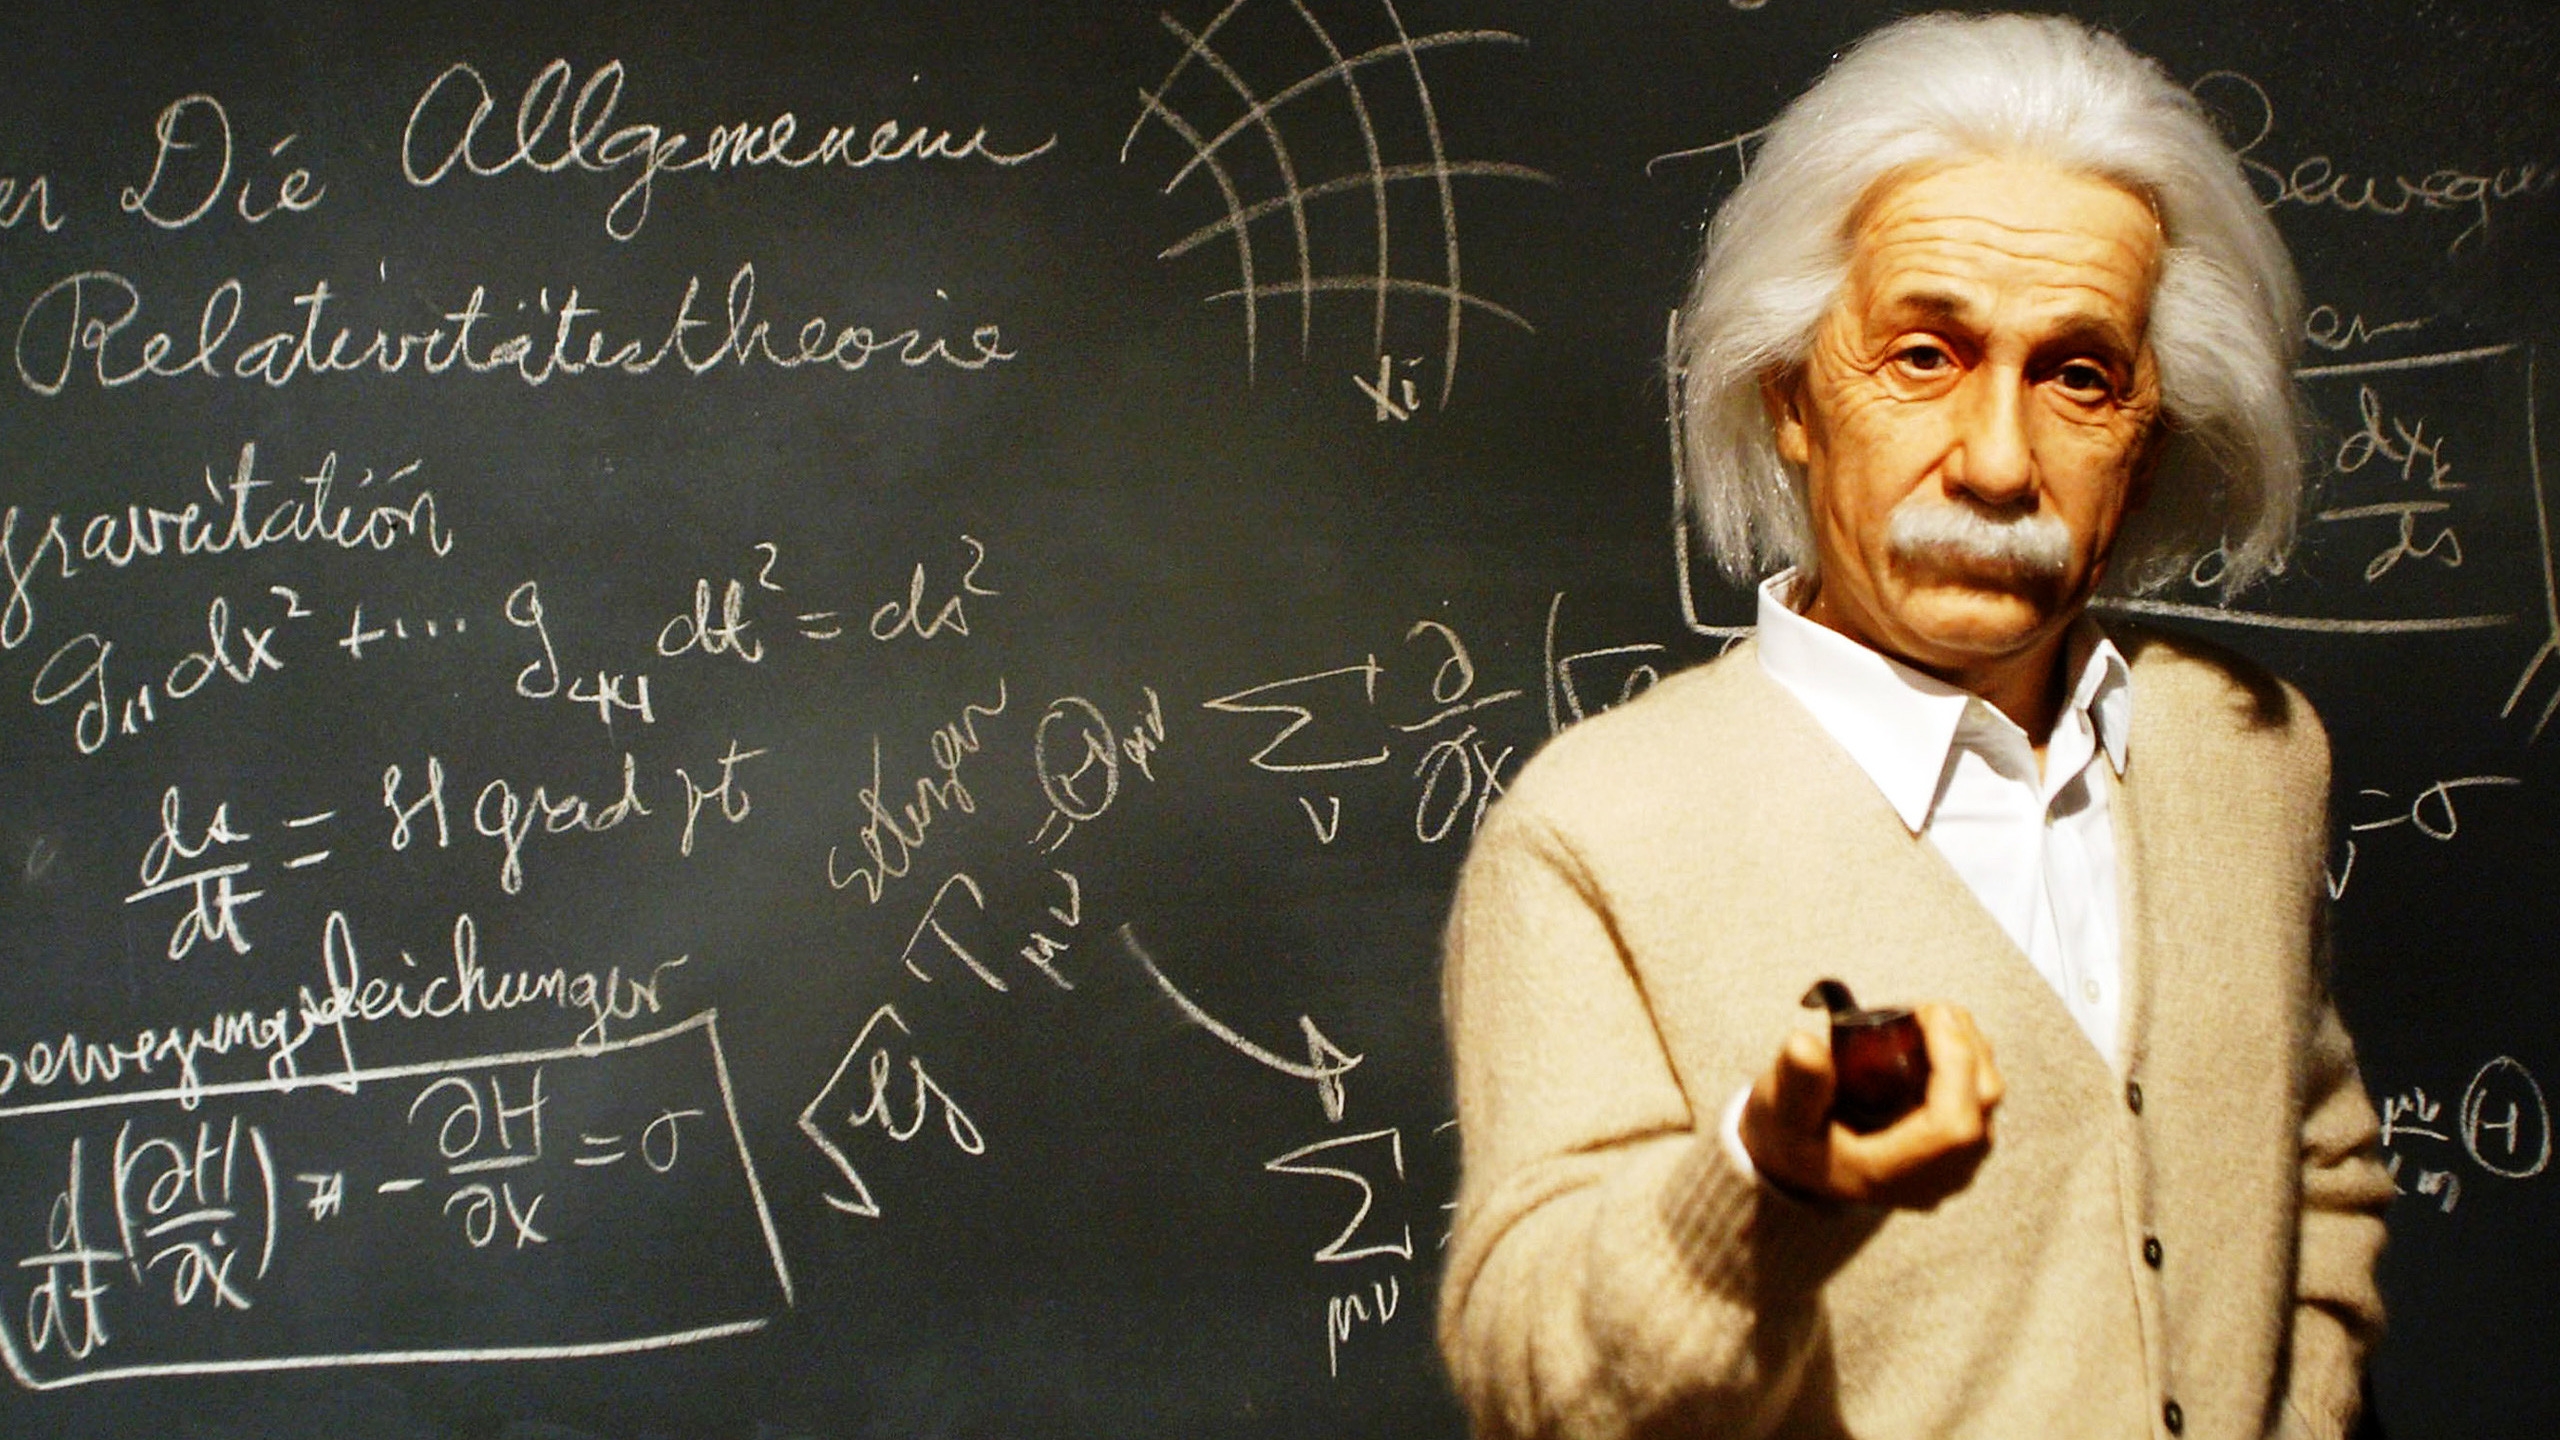 Albert Einstein Teacher for 2560x1440 HDTV resolution